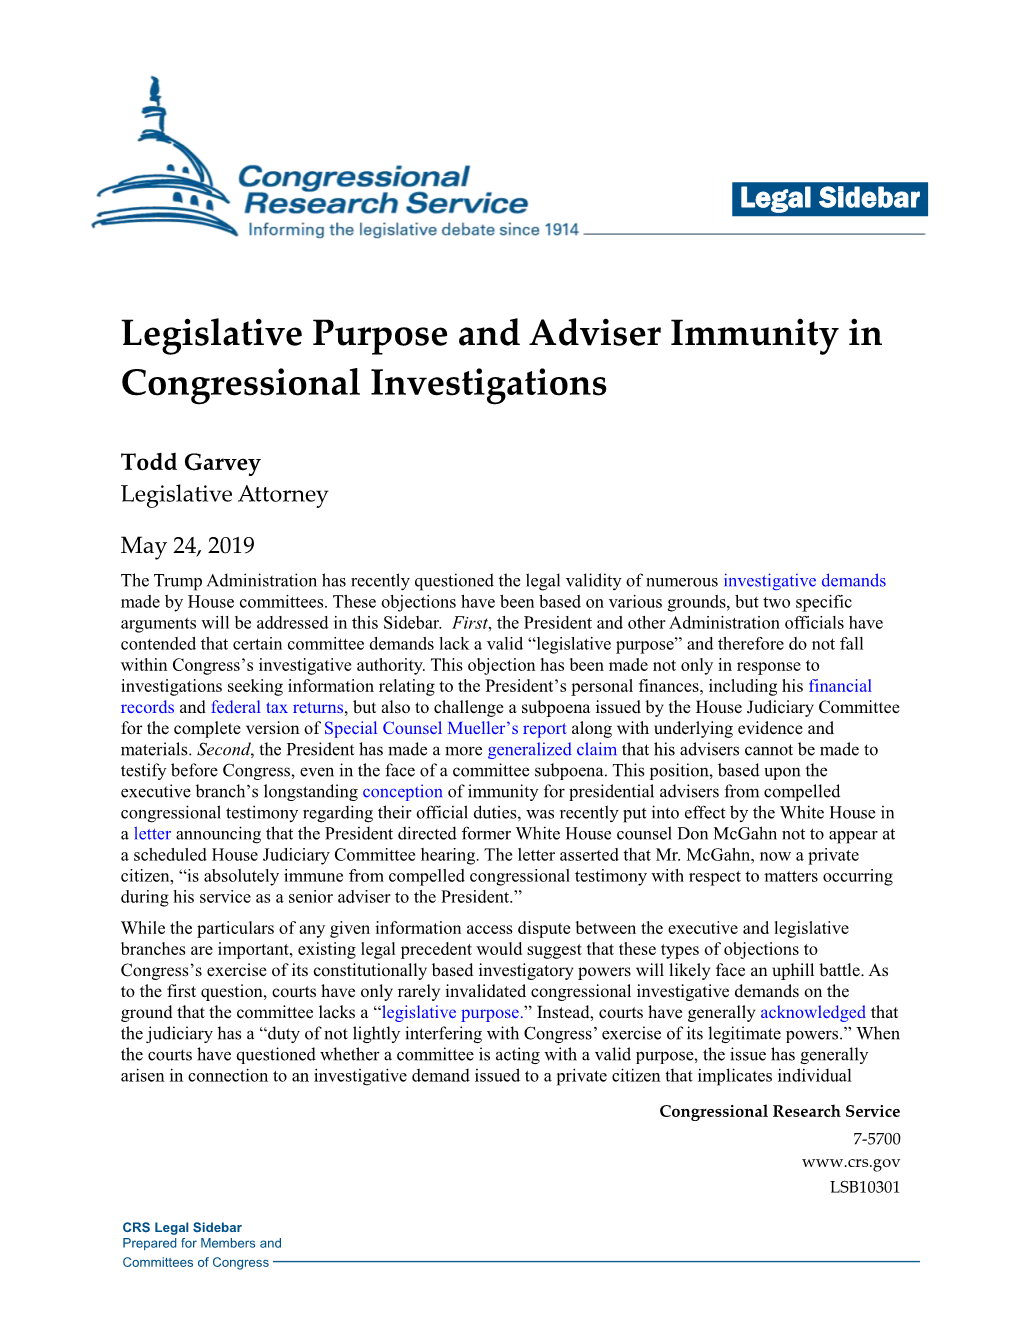 Legislative Purpose and Adviser Immunity in Congressional Investigations